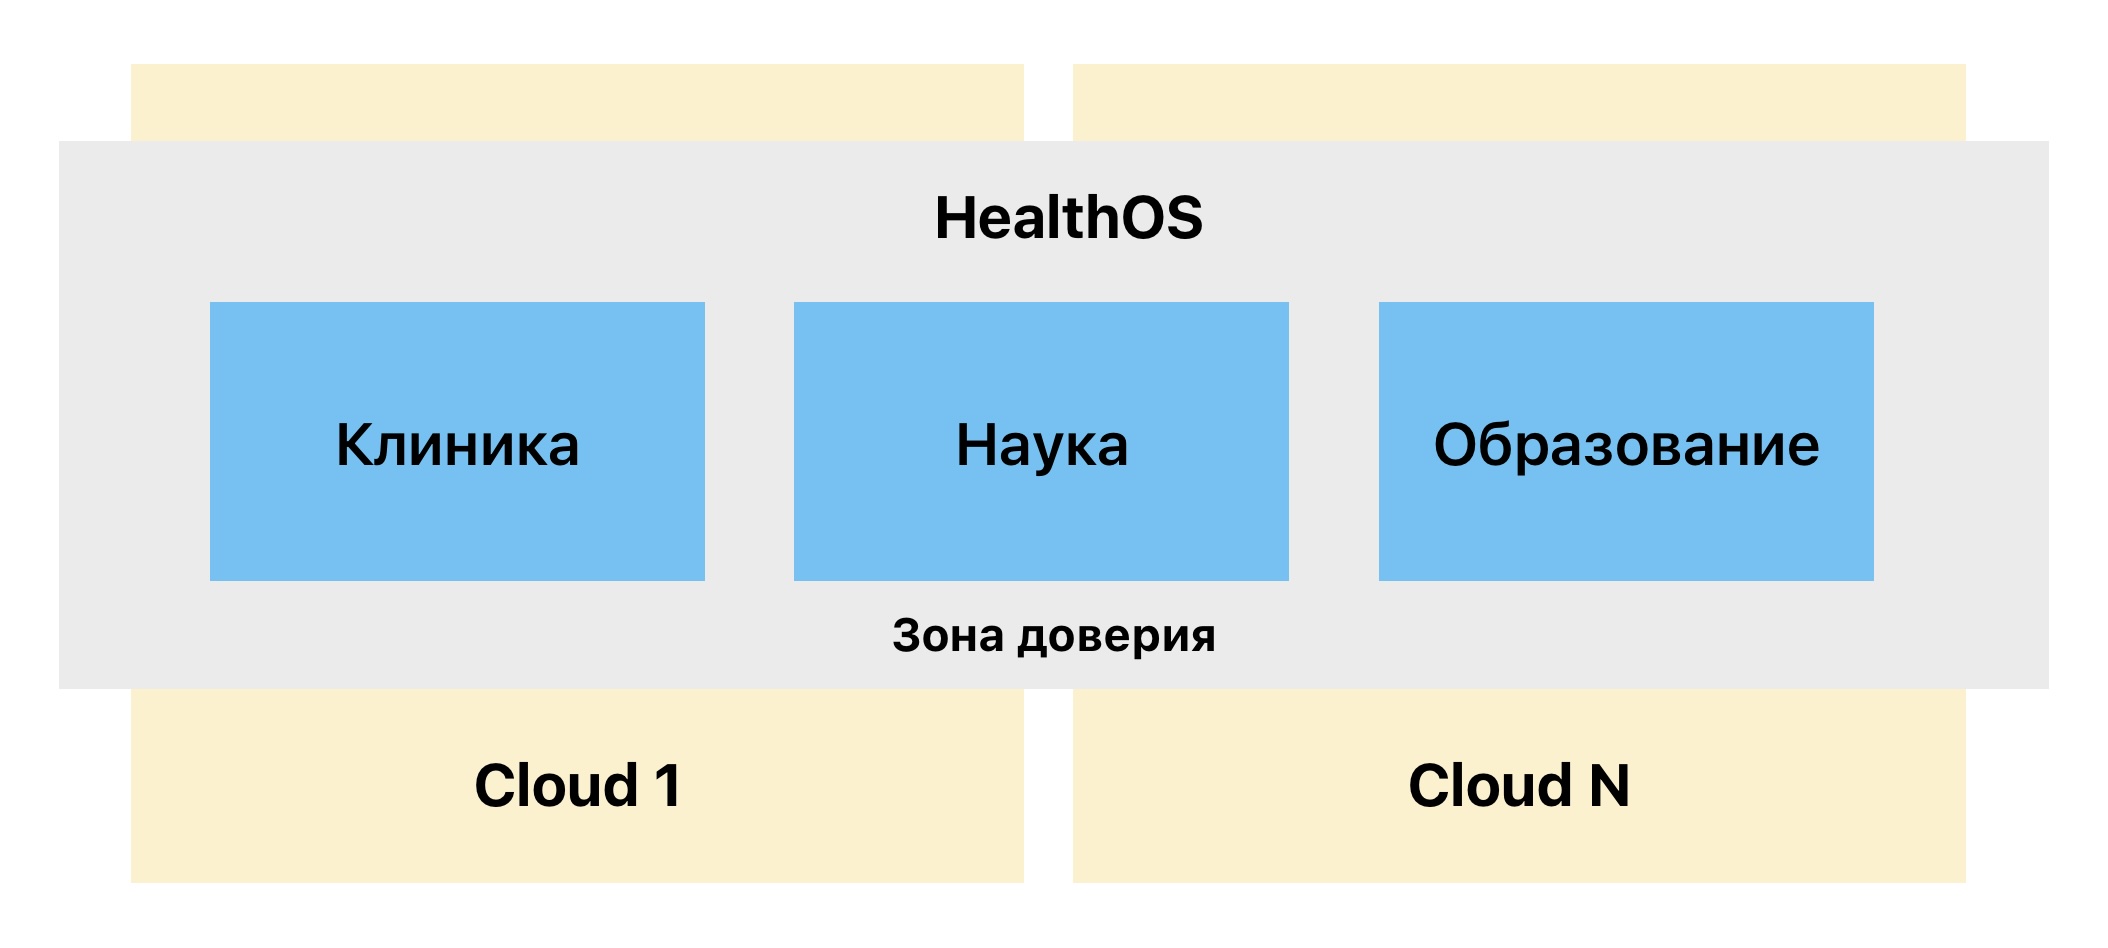 Медицинская платформа HealthOS